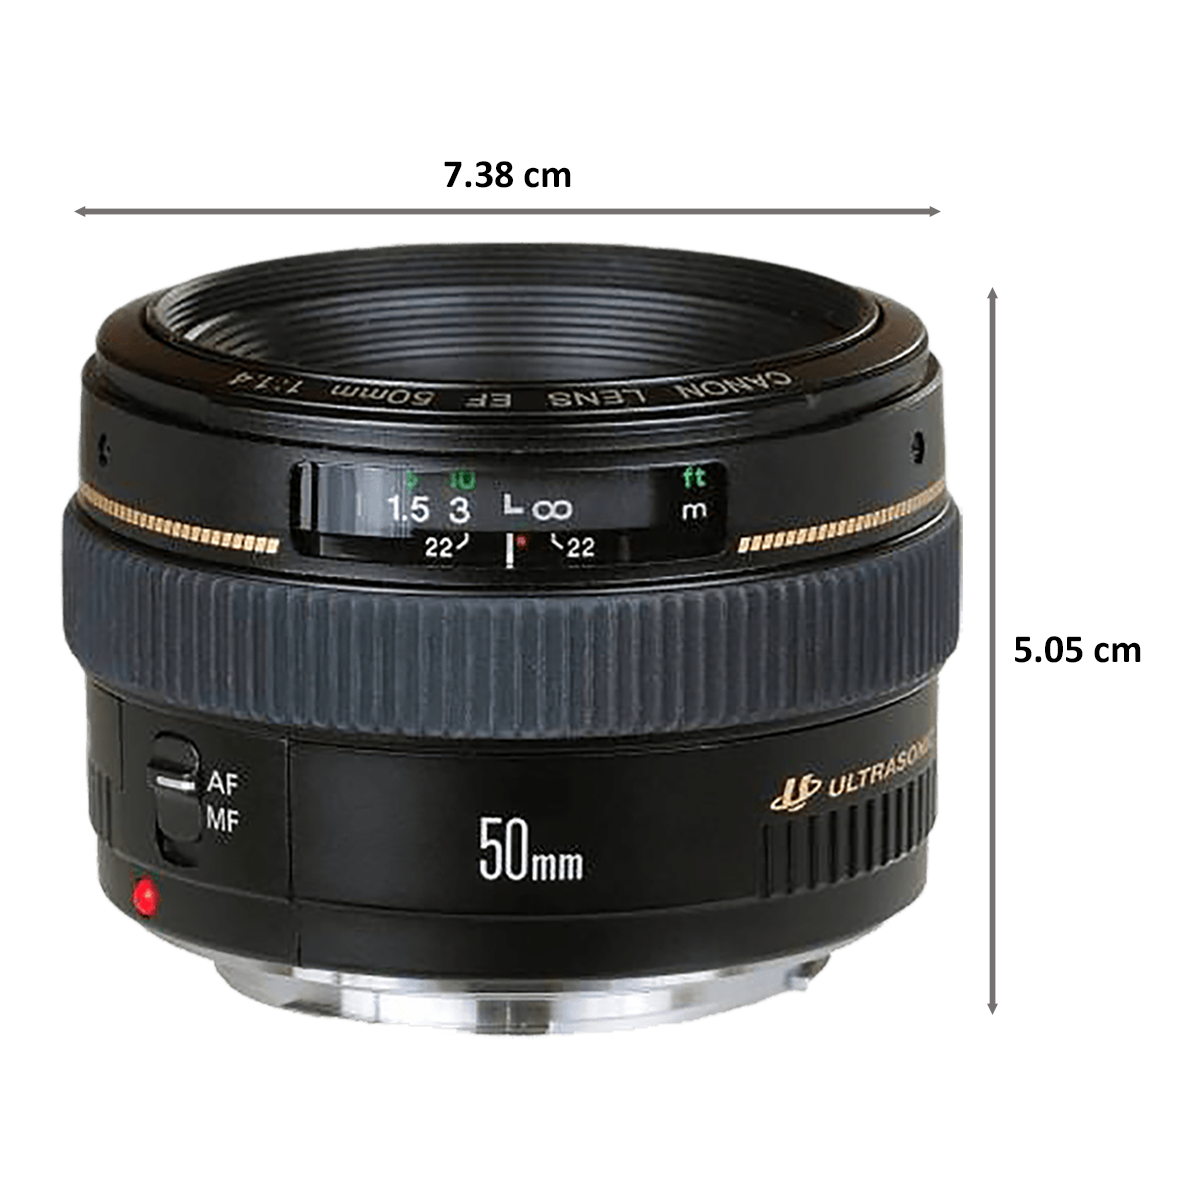 Buy Canon EF USM 50 mm F1.4 DSLR Lens (Black) Online - Croma